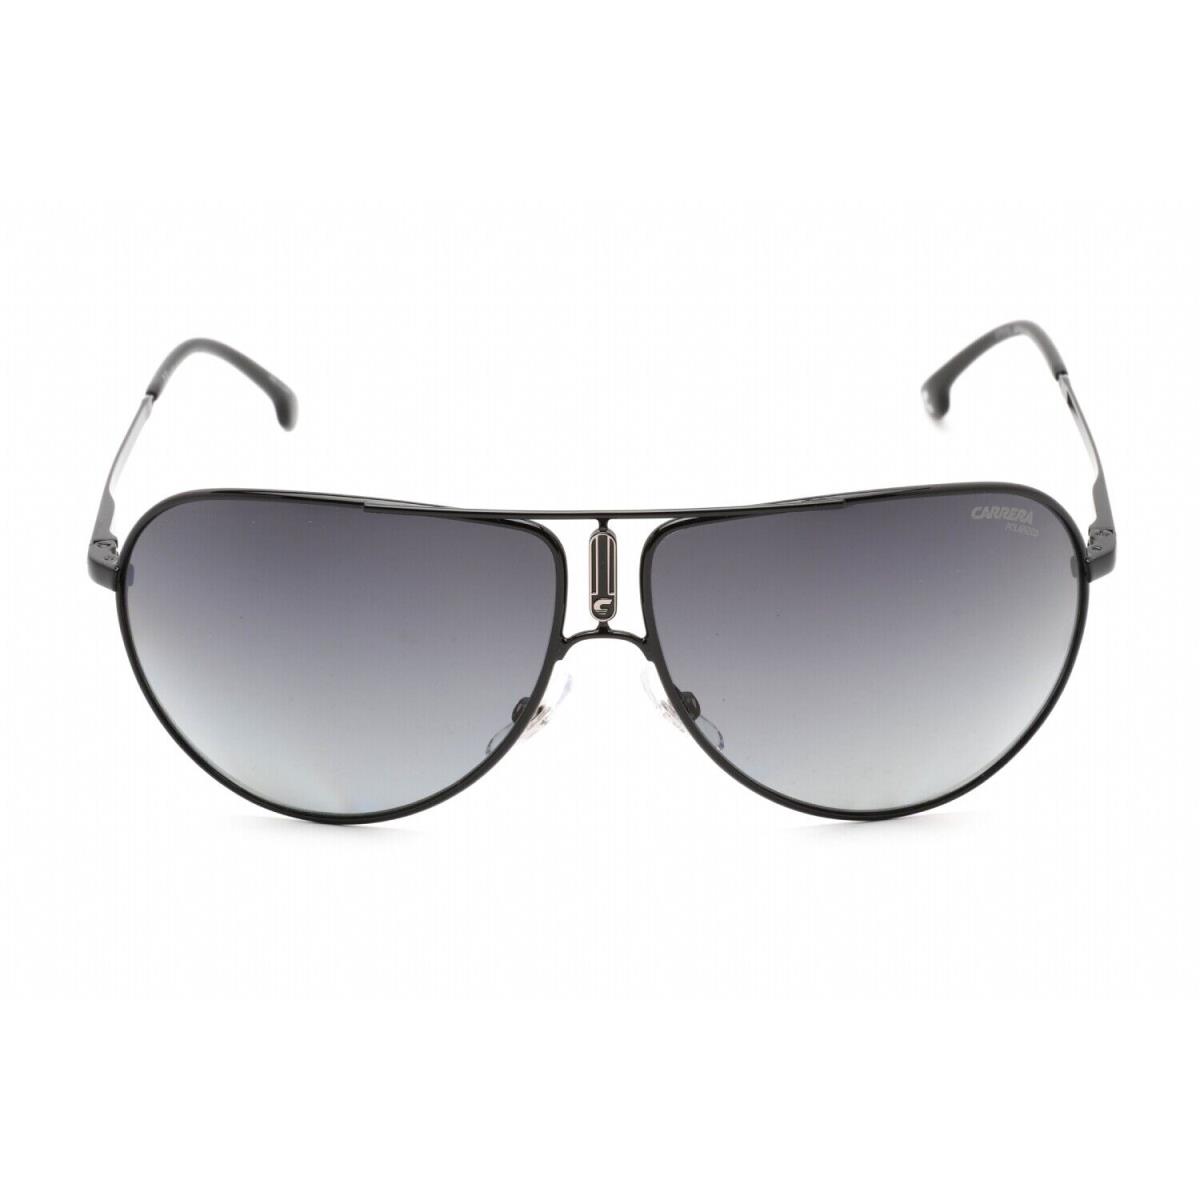 Carrera GIPSY65 0807 WJ Sunglasses Black Frame Gray Polarised Lenses 64mm - Frame: Black, Lens: Gray